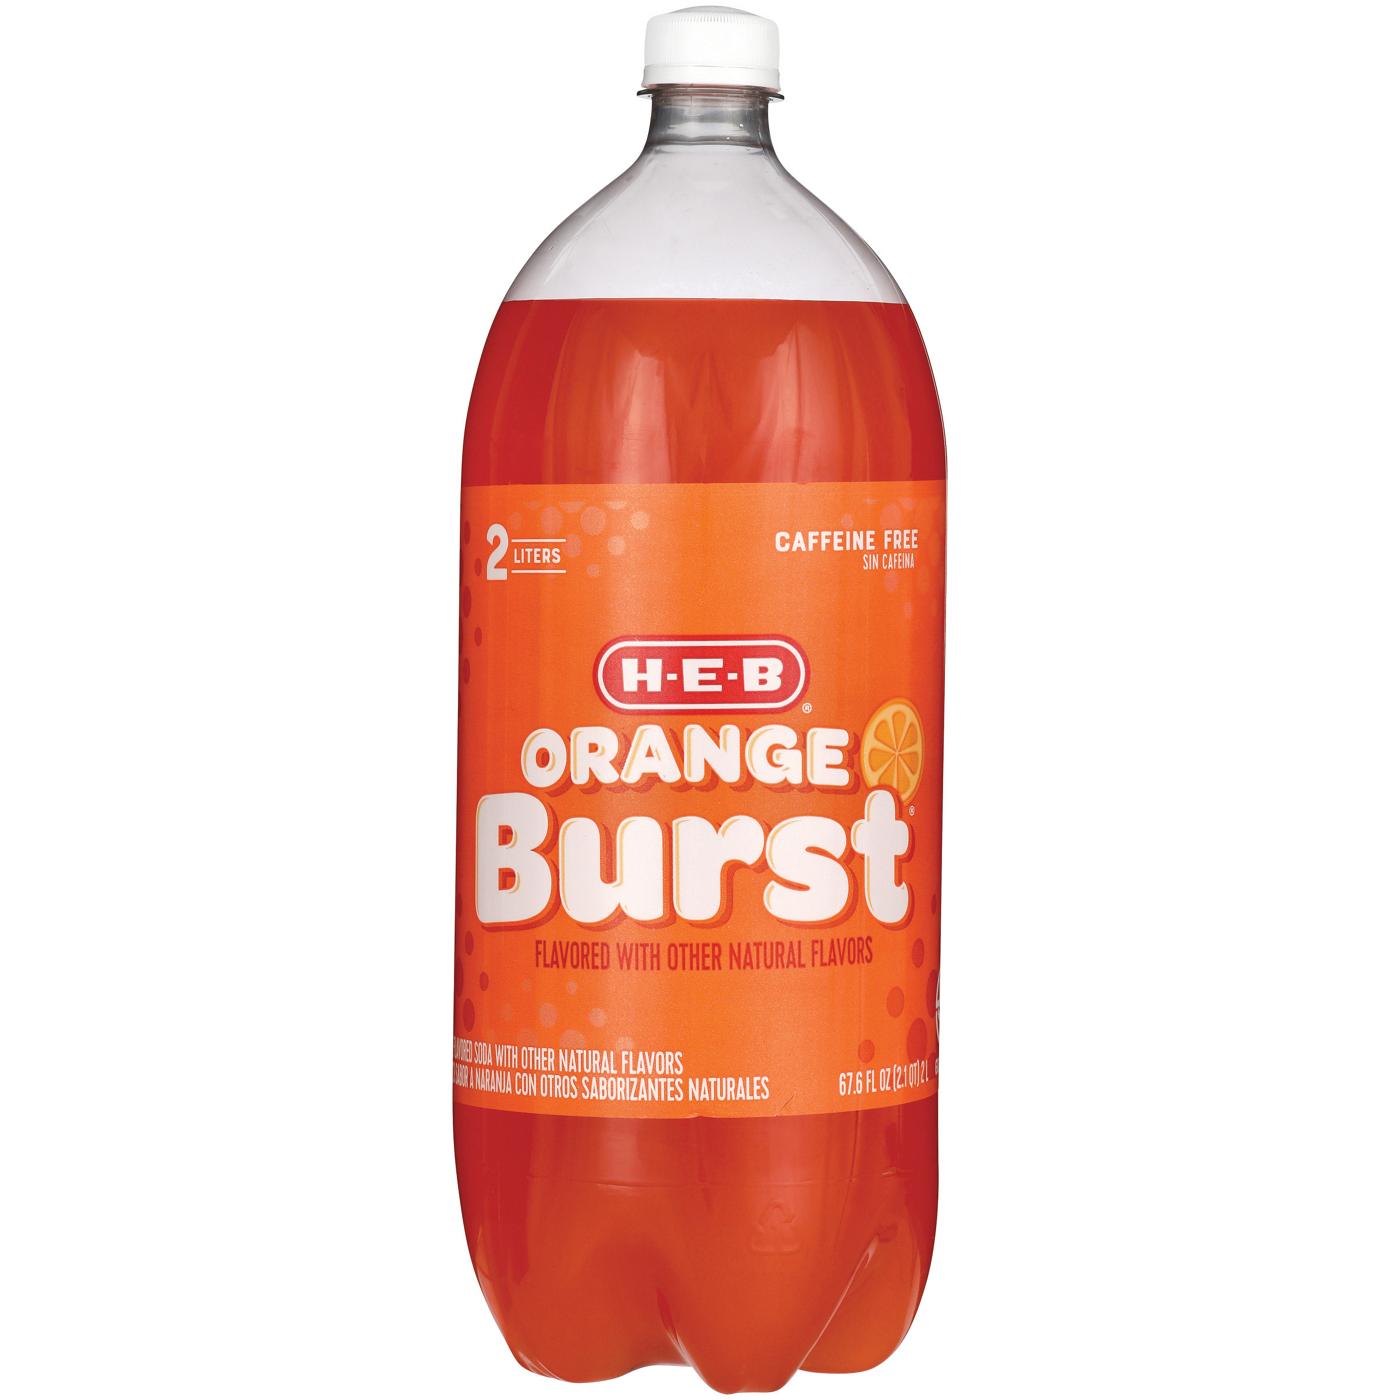 H-E-B Orange Burst Soda; image 2 of 2